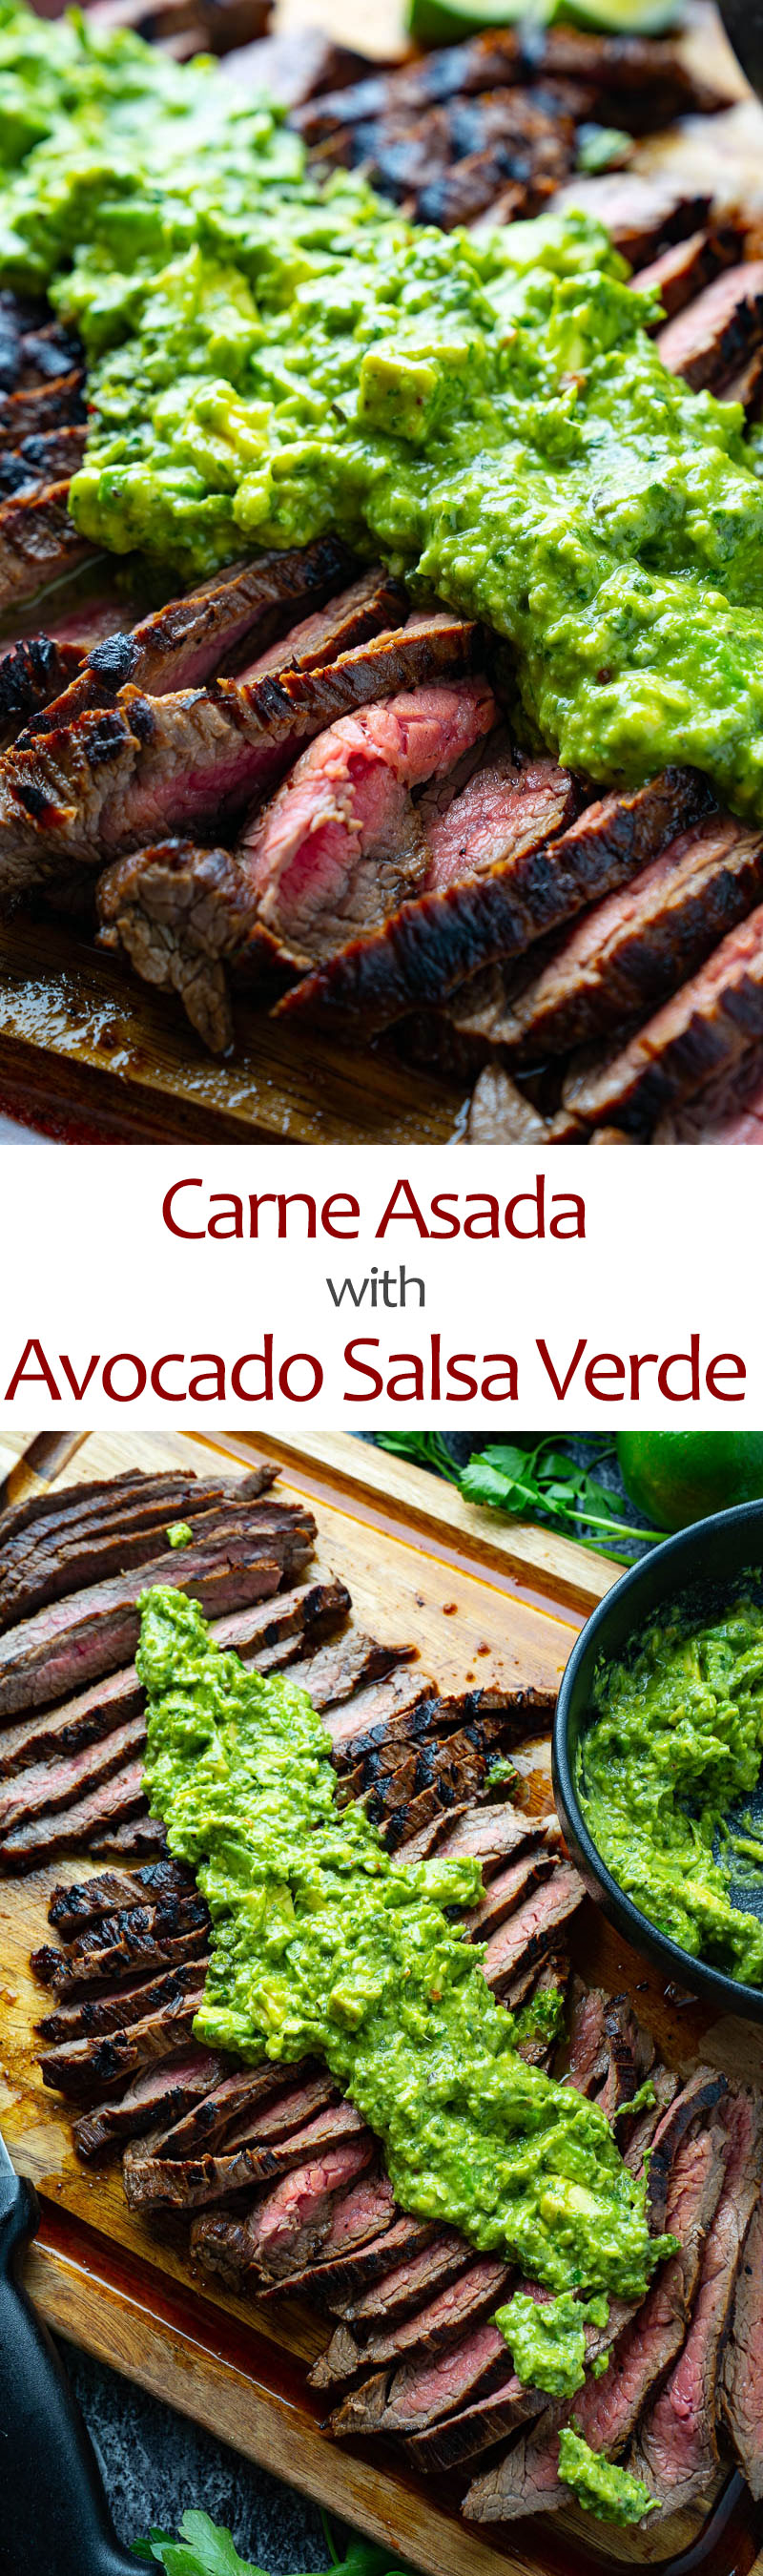 Carne Asada with Avocado Salsa Verde